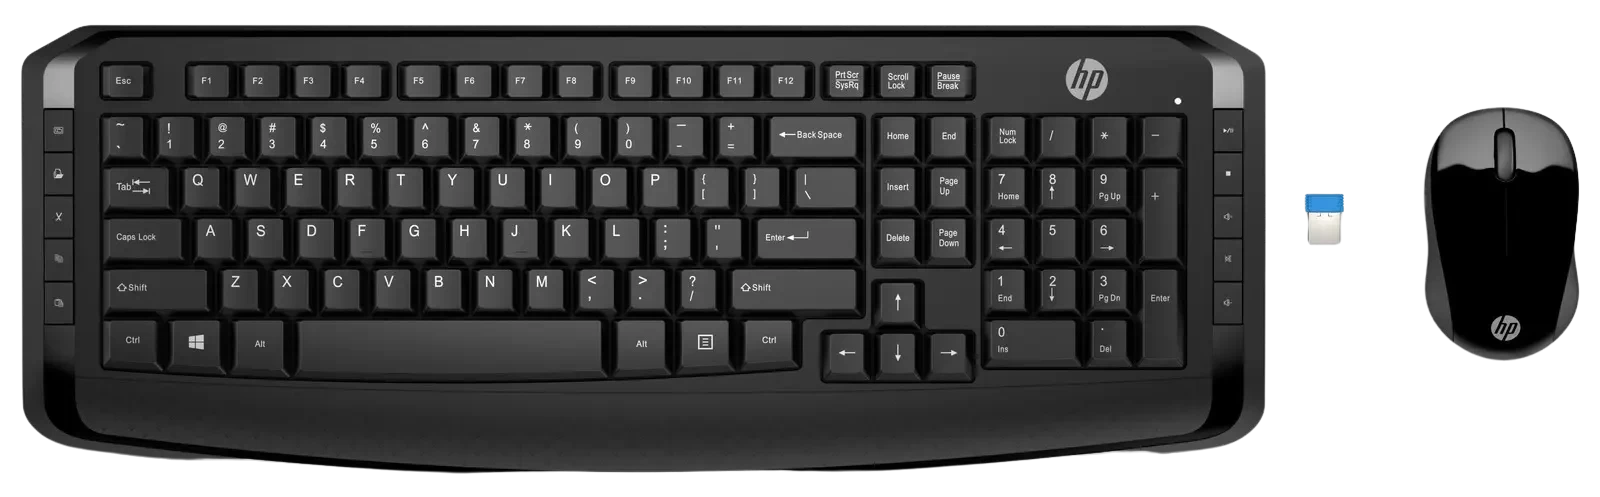 أتش بي لوحة مفاتيح وماوس لاسلكي 300 أسود - (3ML04AA)